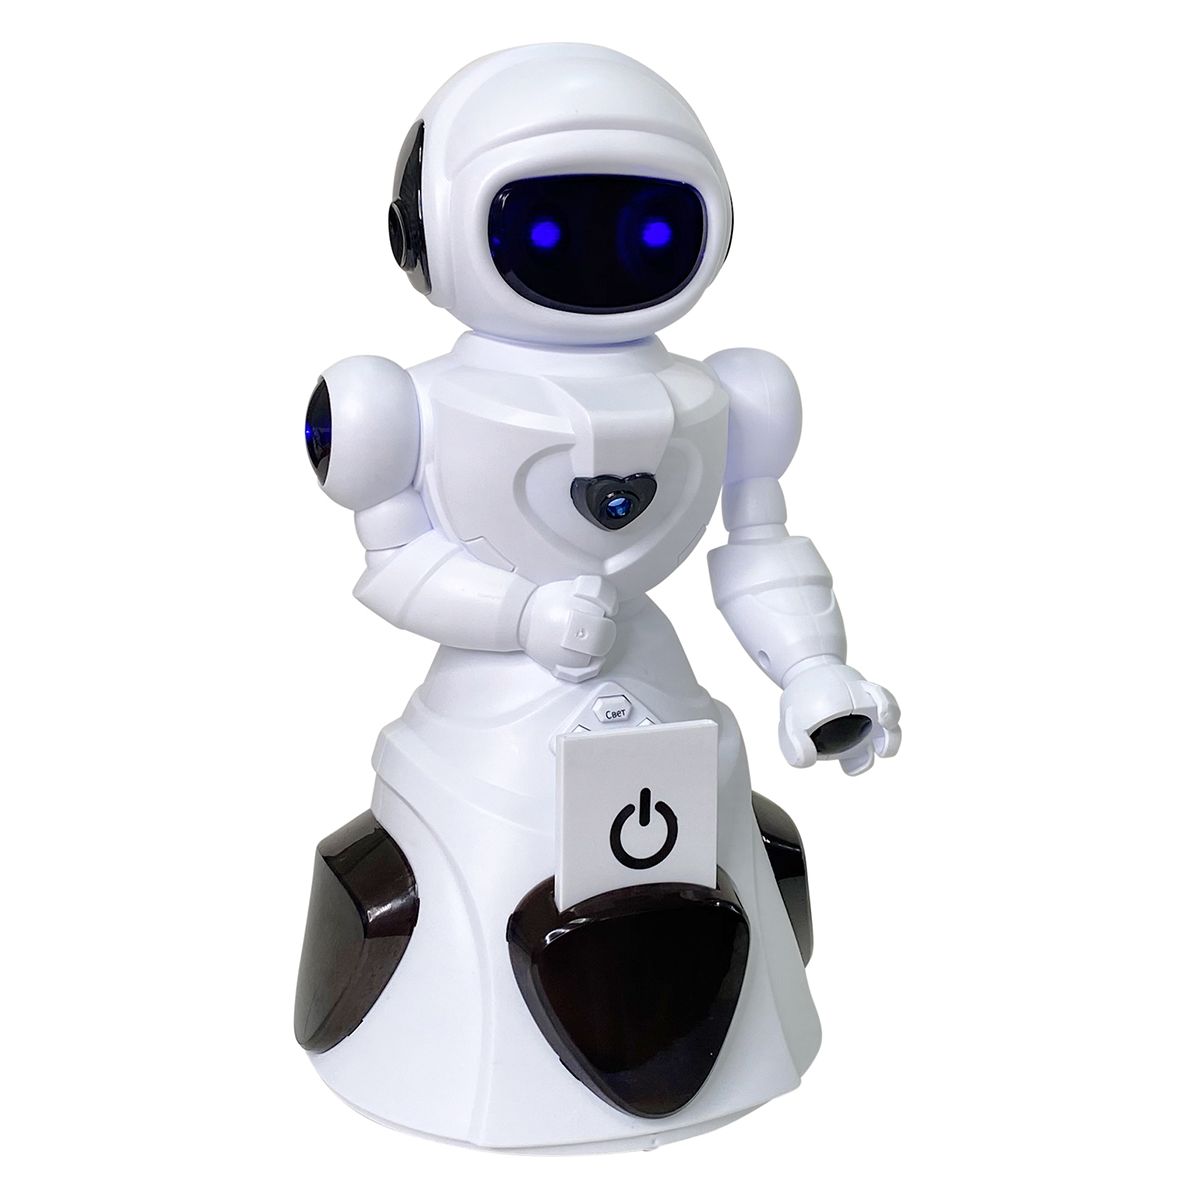 Интерактивный робот Нордпласт белый/черный 9/0062 интерактивный робот silverlit покибот белый с синим